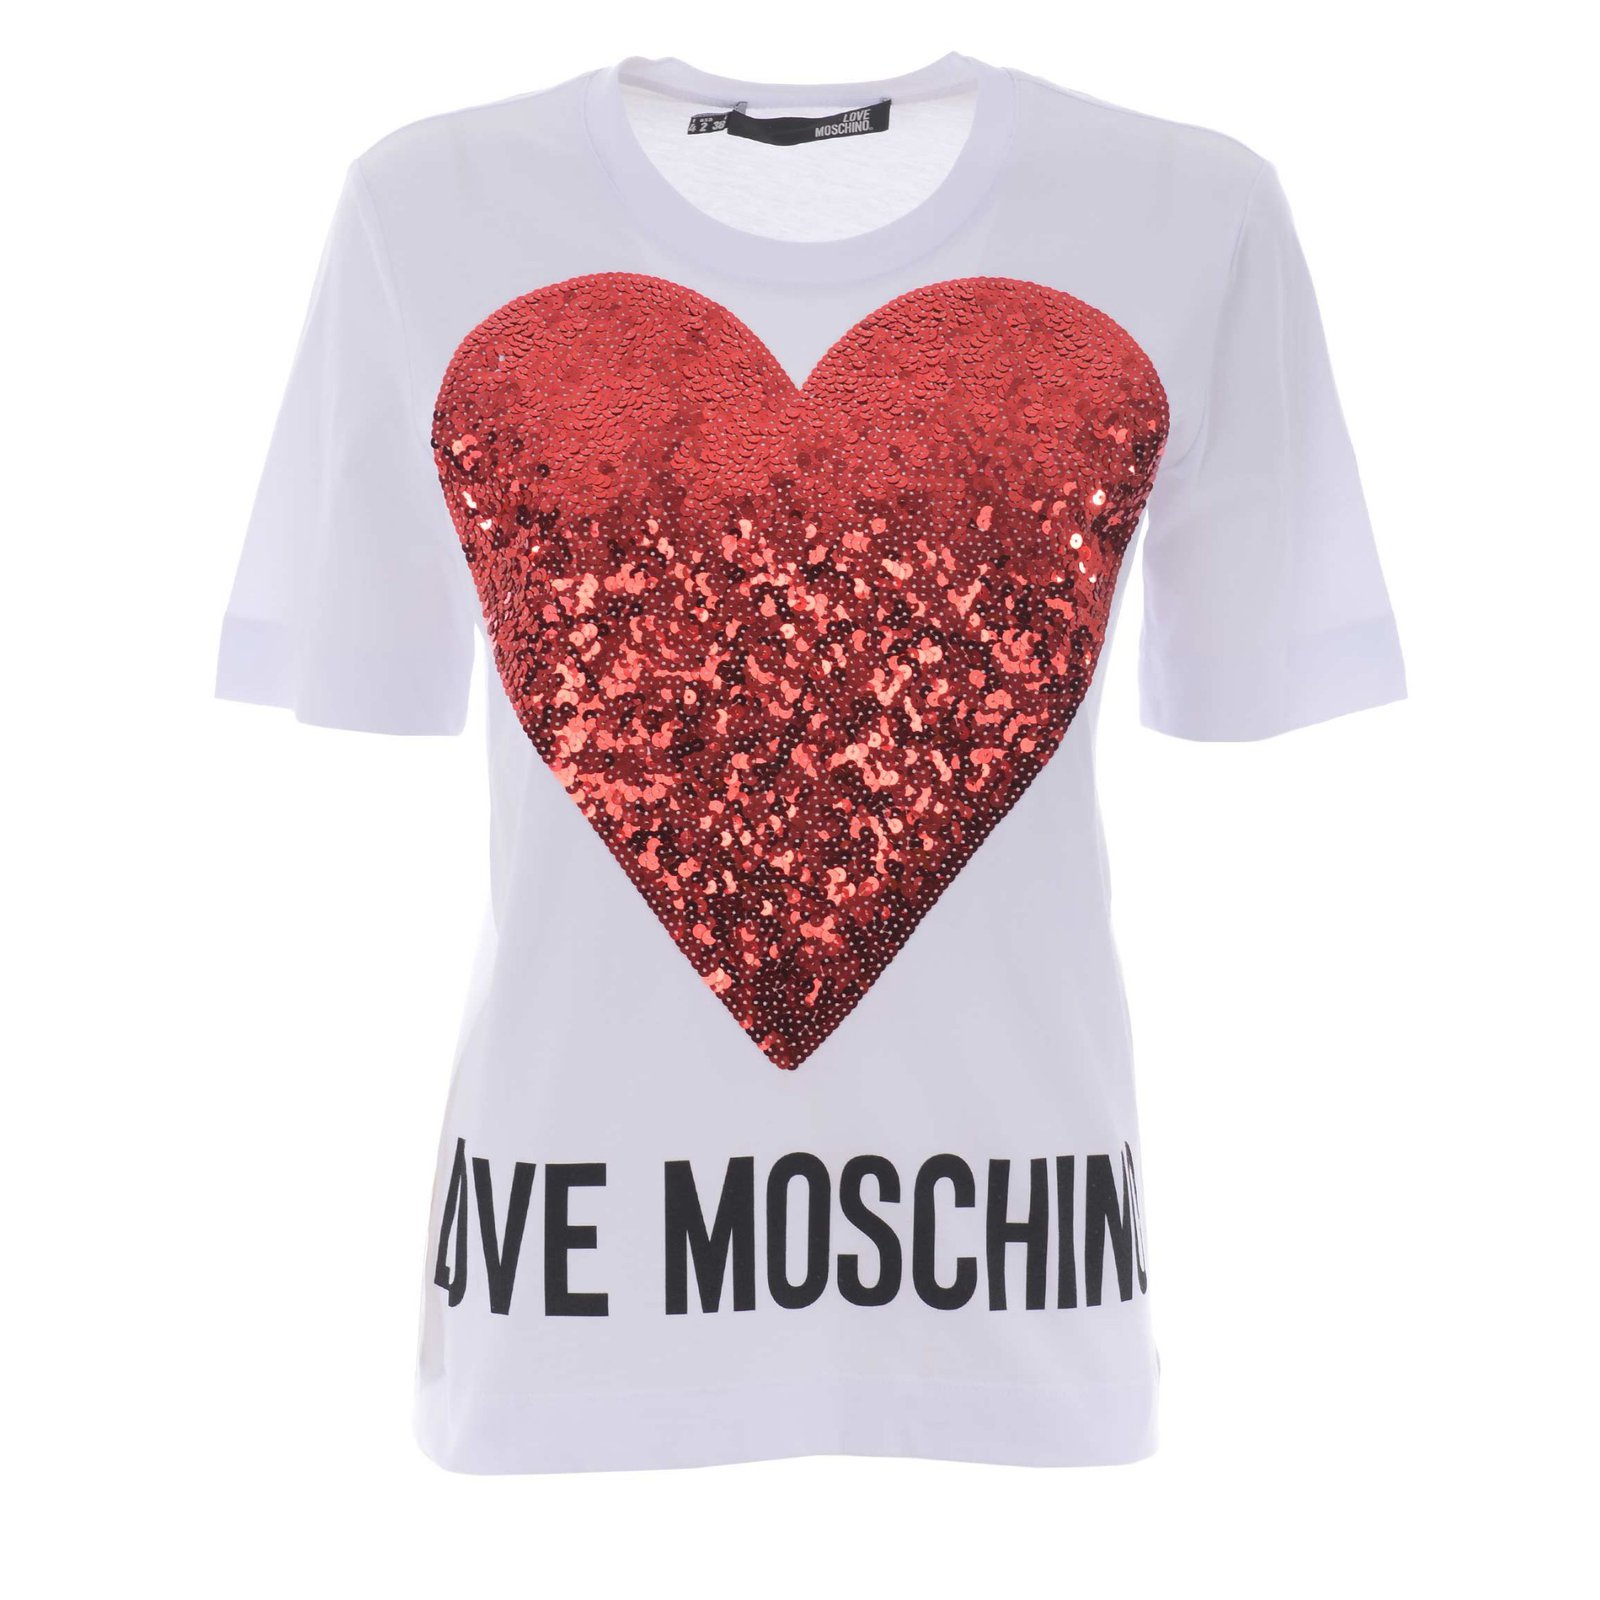 love moschino tops